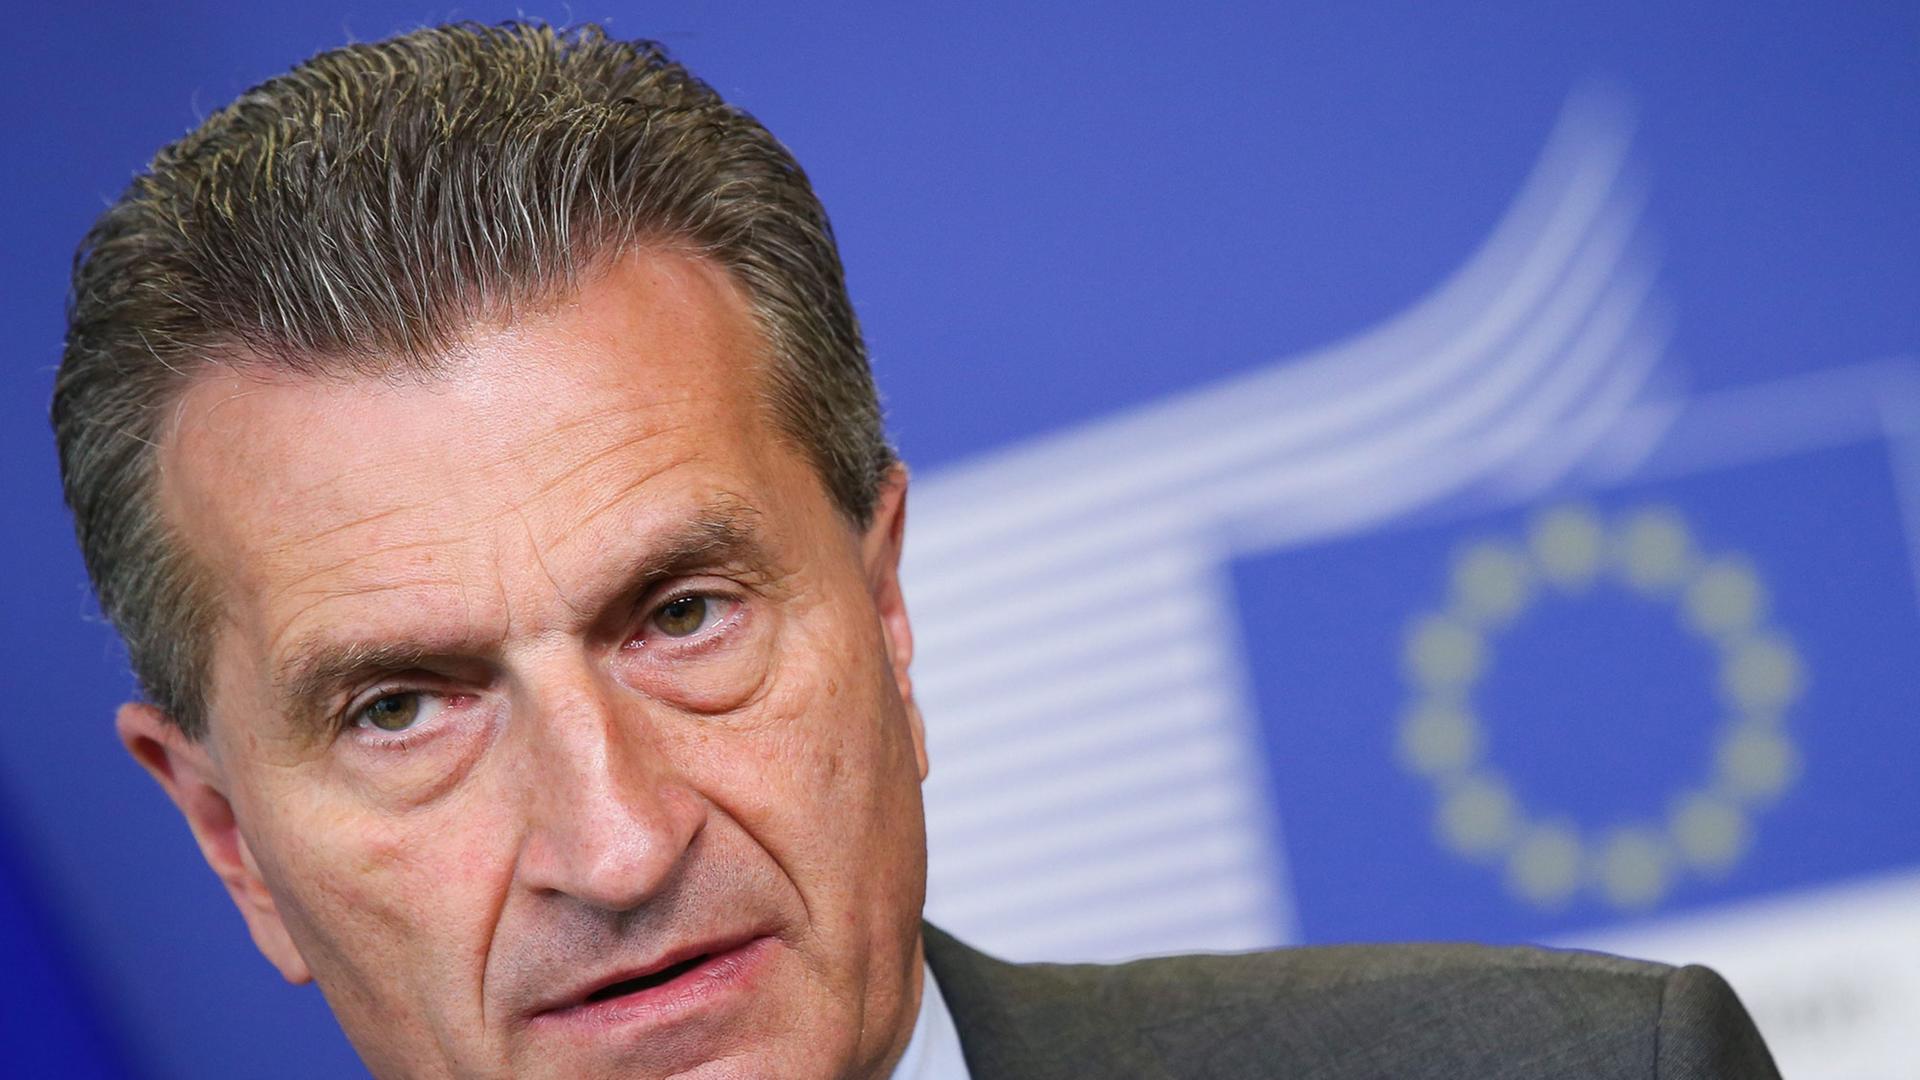 Der damalige EU-Kommissar Günther Oettinger während einer Pressekonferenz am 24. Juni 2014 in der EU-Kommission in Brüssel, Belgien